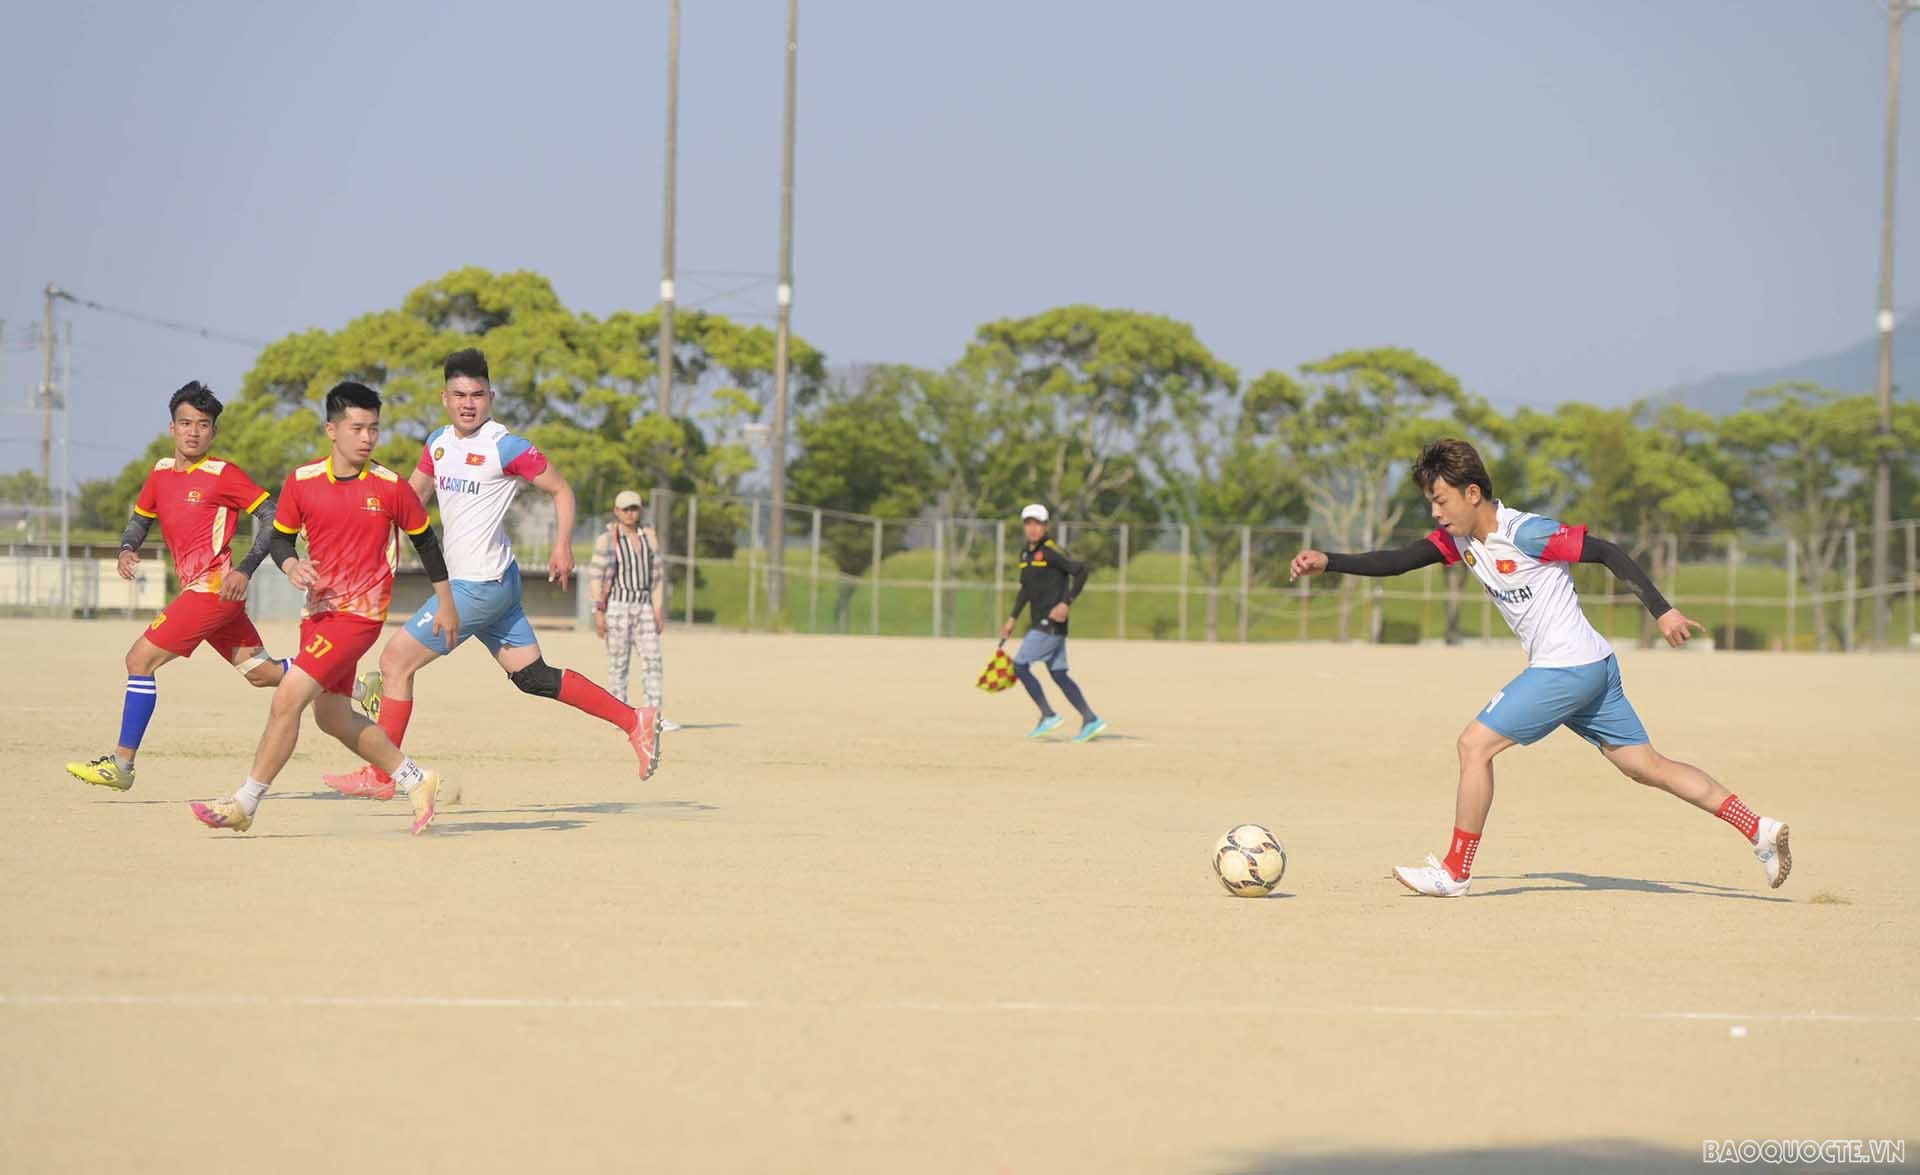 Tổ chức thành công Đại hội thể thao người Việt Nam tại Kitakyushu, Nhật Bản lần thứ nhất